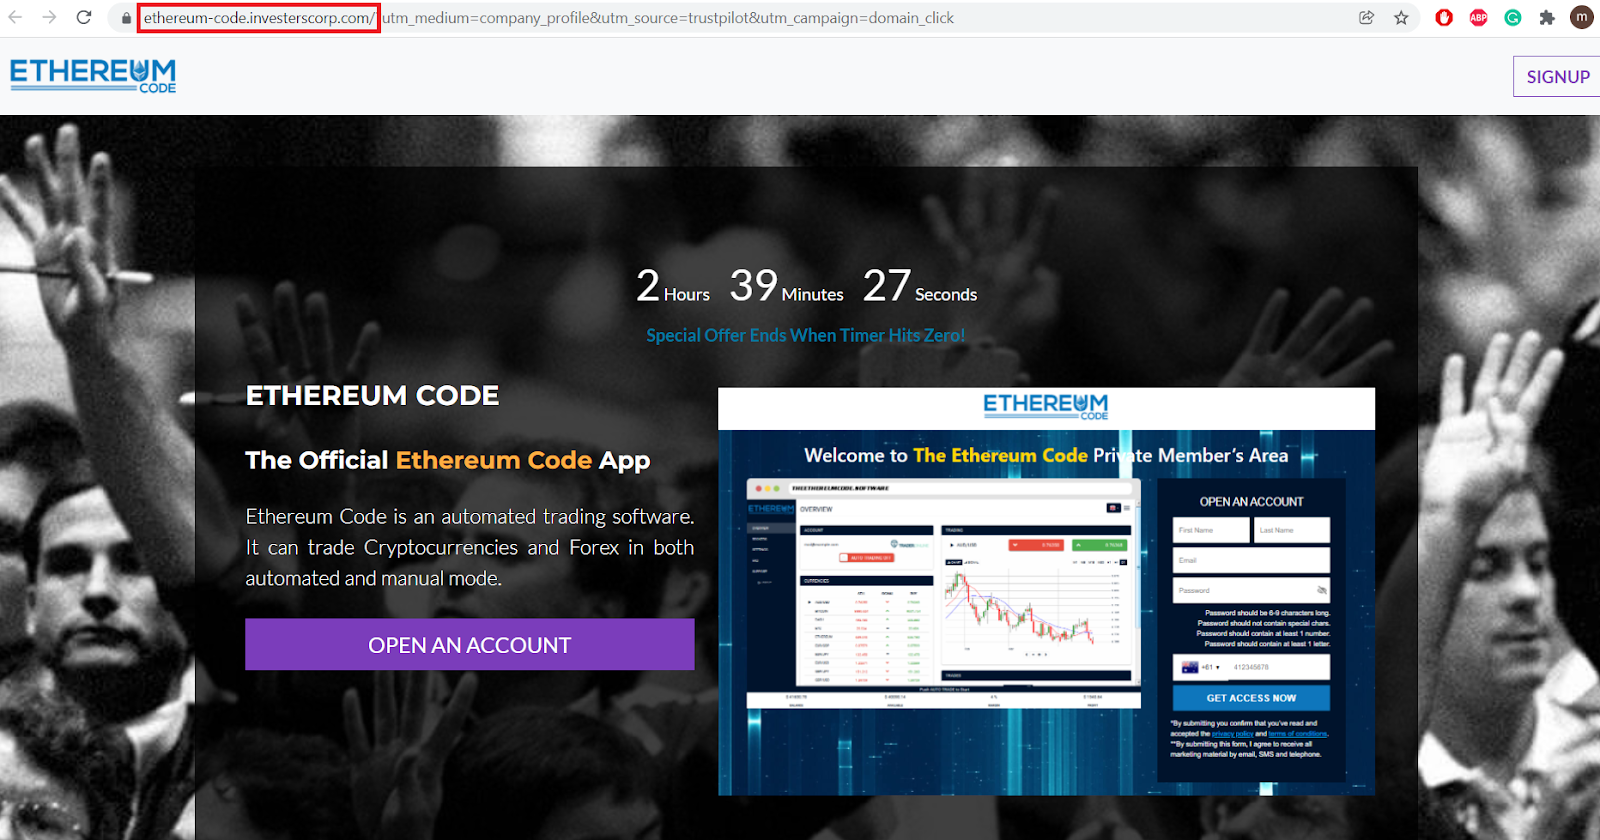 diseño del sitio web similar al de Ethereum Code